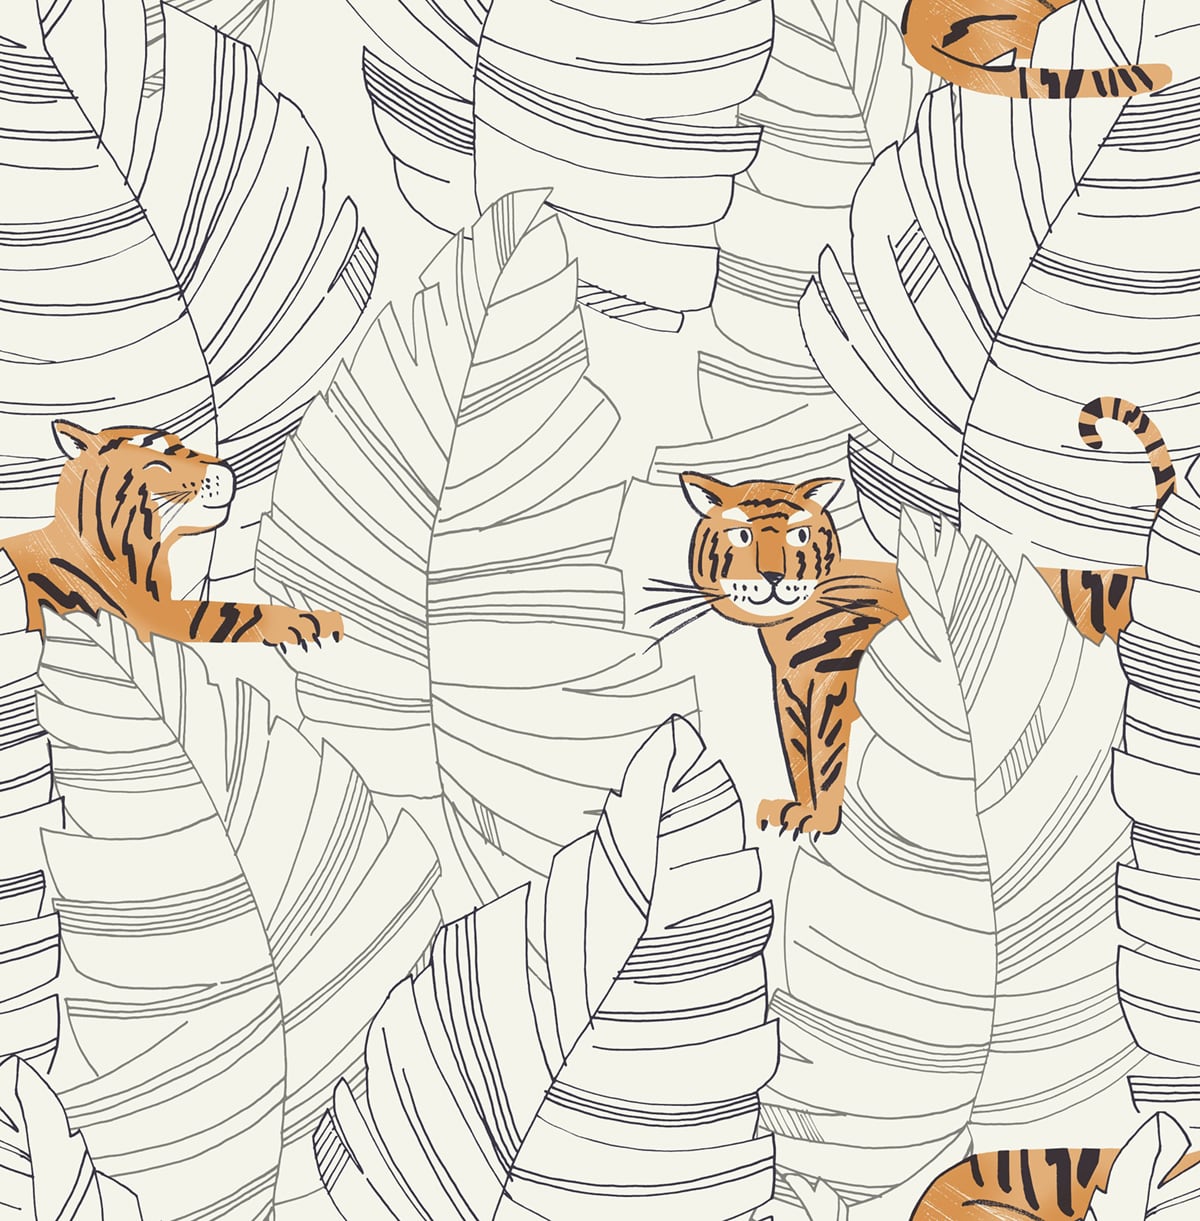 Seabrook Designs DA61200 Day Dreamers Hiding Tigers  Wallpaper Black and Orange